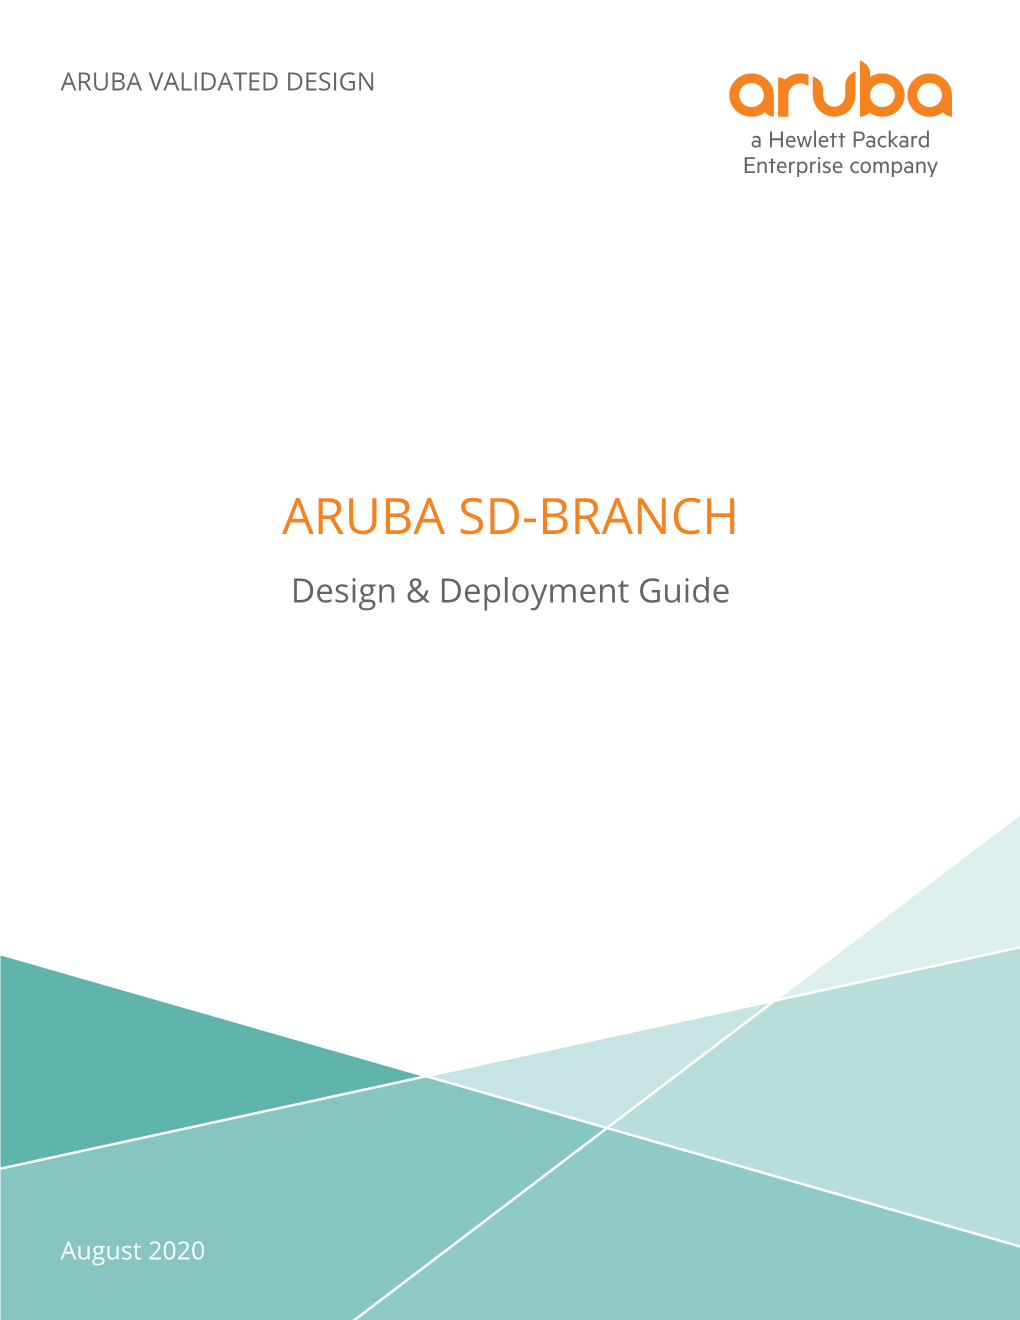 ARUBA SD-BRANCH Design & Deployment Guide